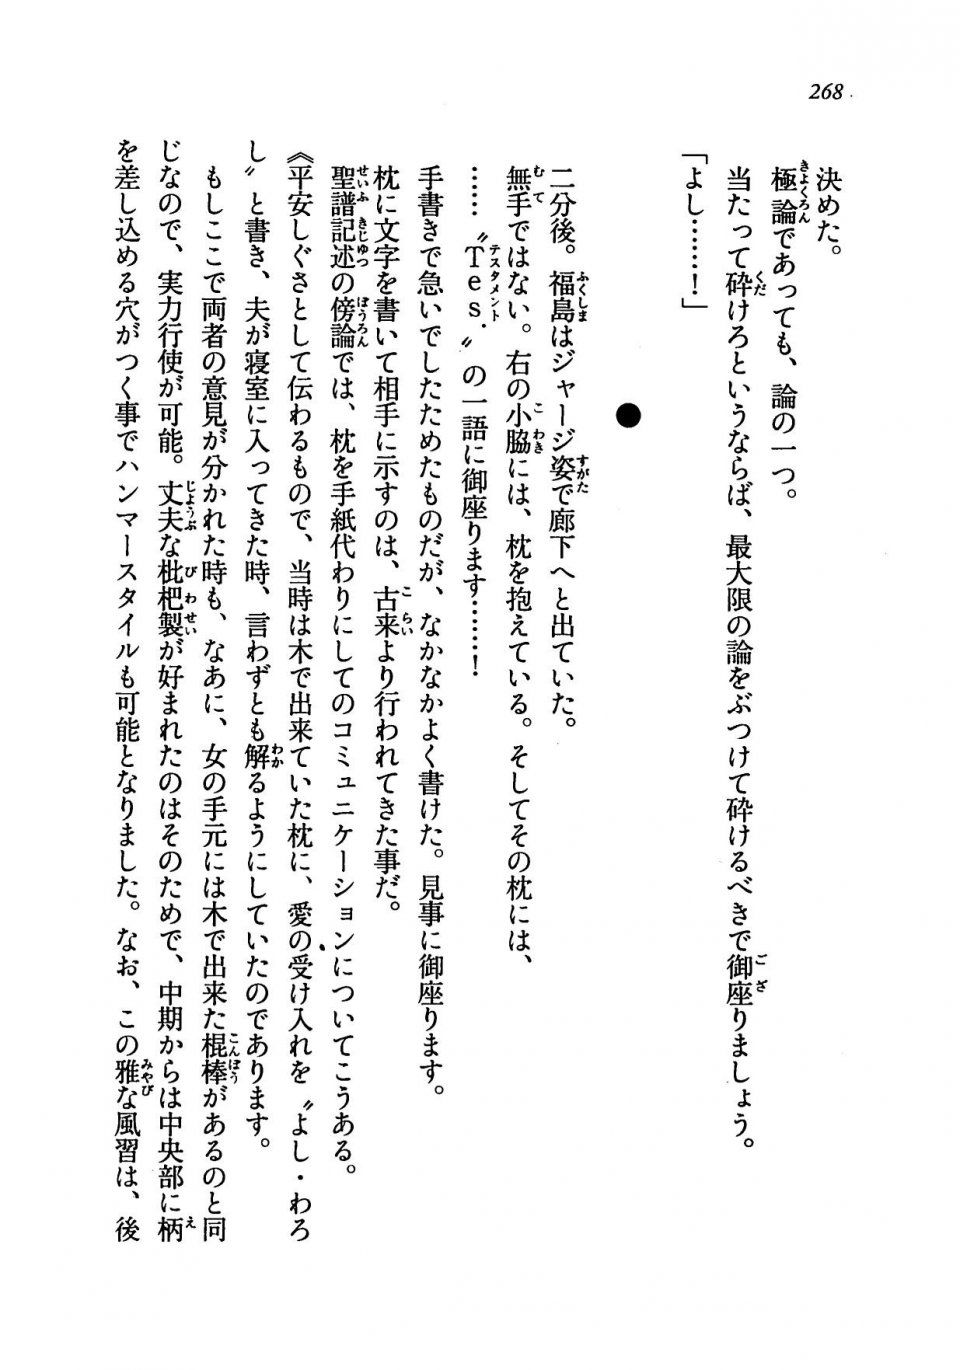 Kyoukai Senjou no Horizon LN Vol 19(8A) - Photo #268